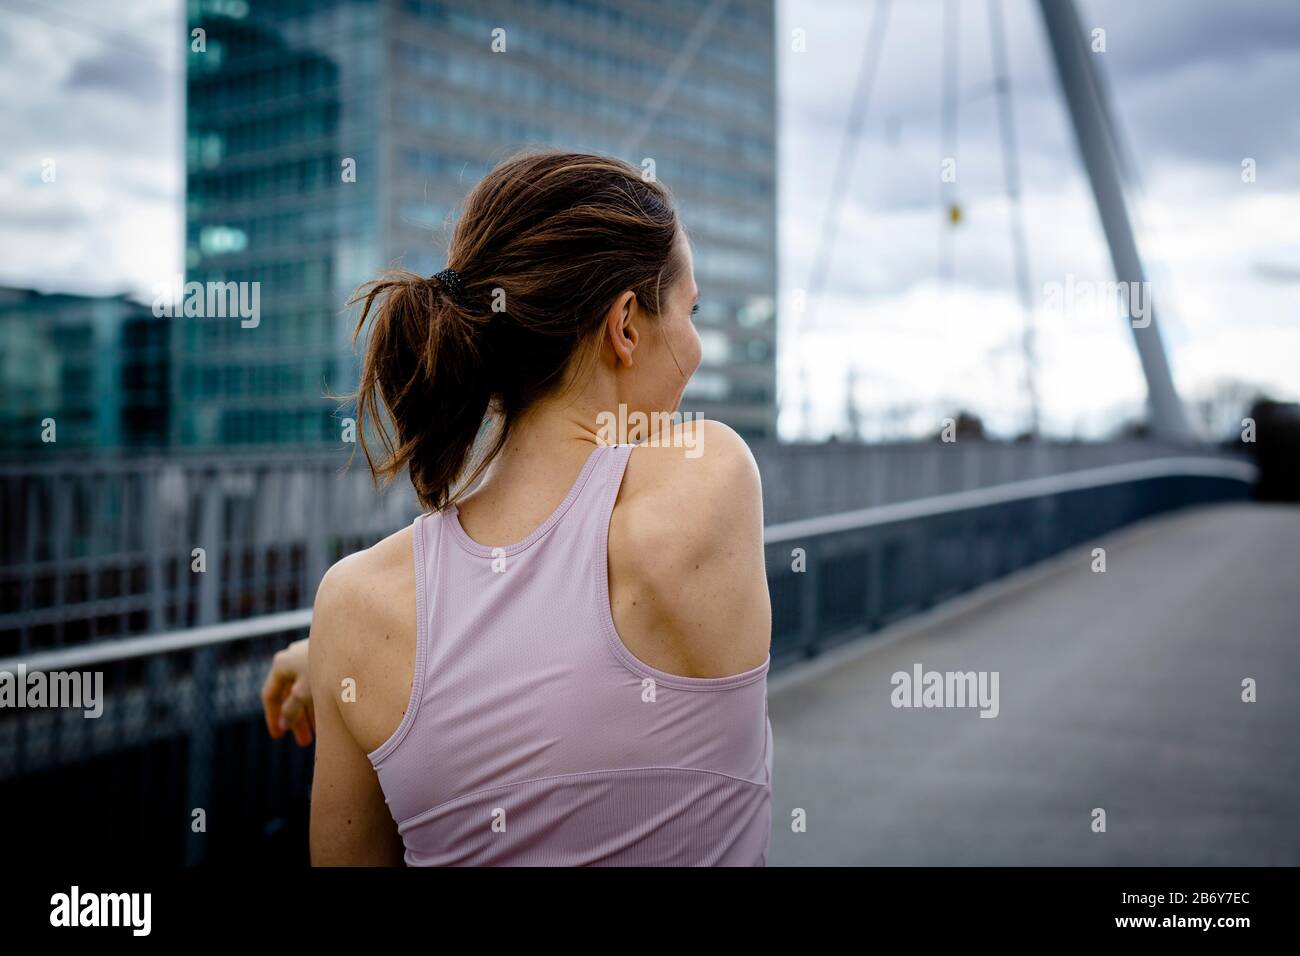 Aufnahme einer Sportlerin, die sich bereit macht für ein workout in der Stadt. Shot of an athlete getting ready for a workout in the city. Stock Photo